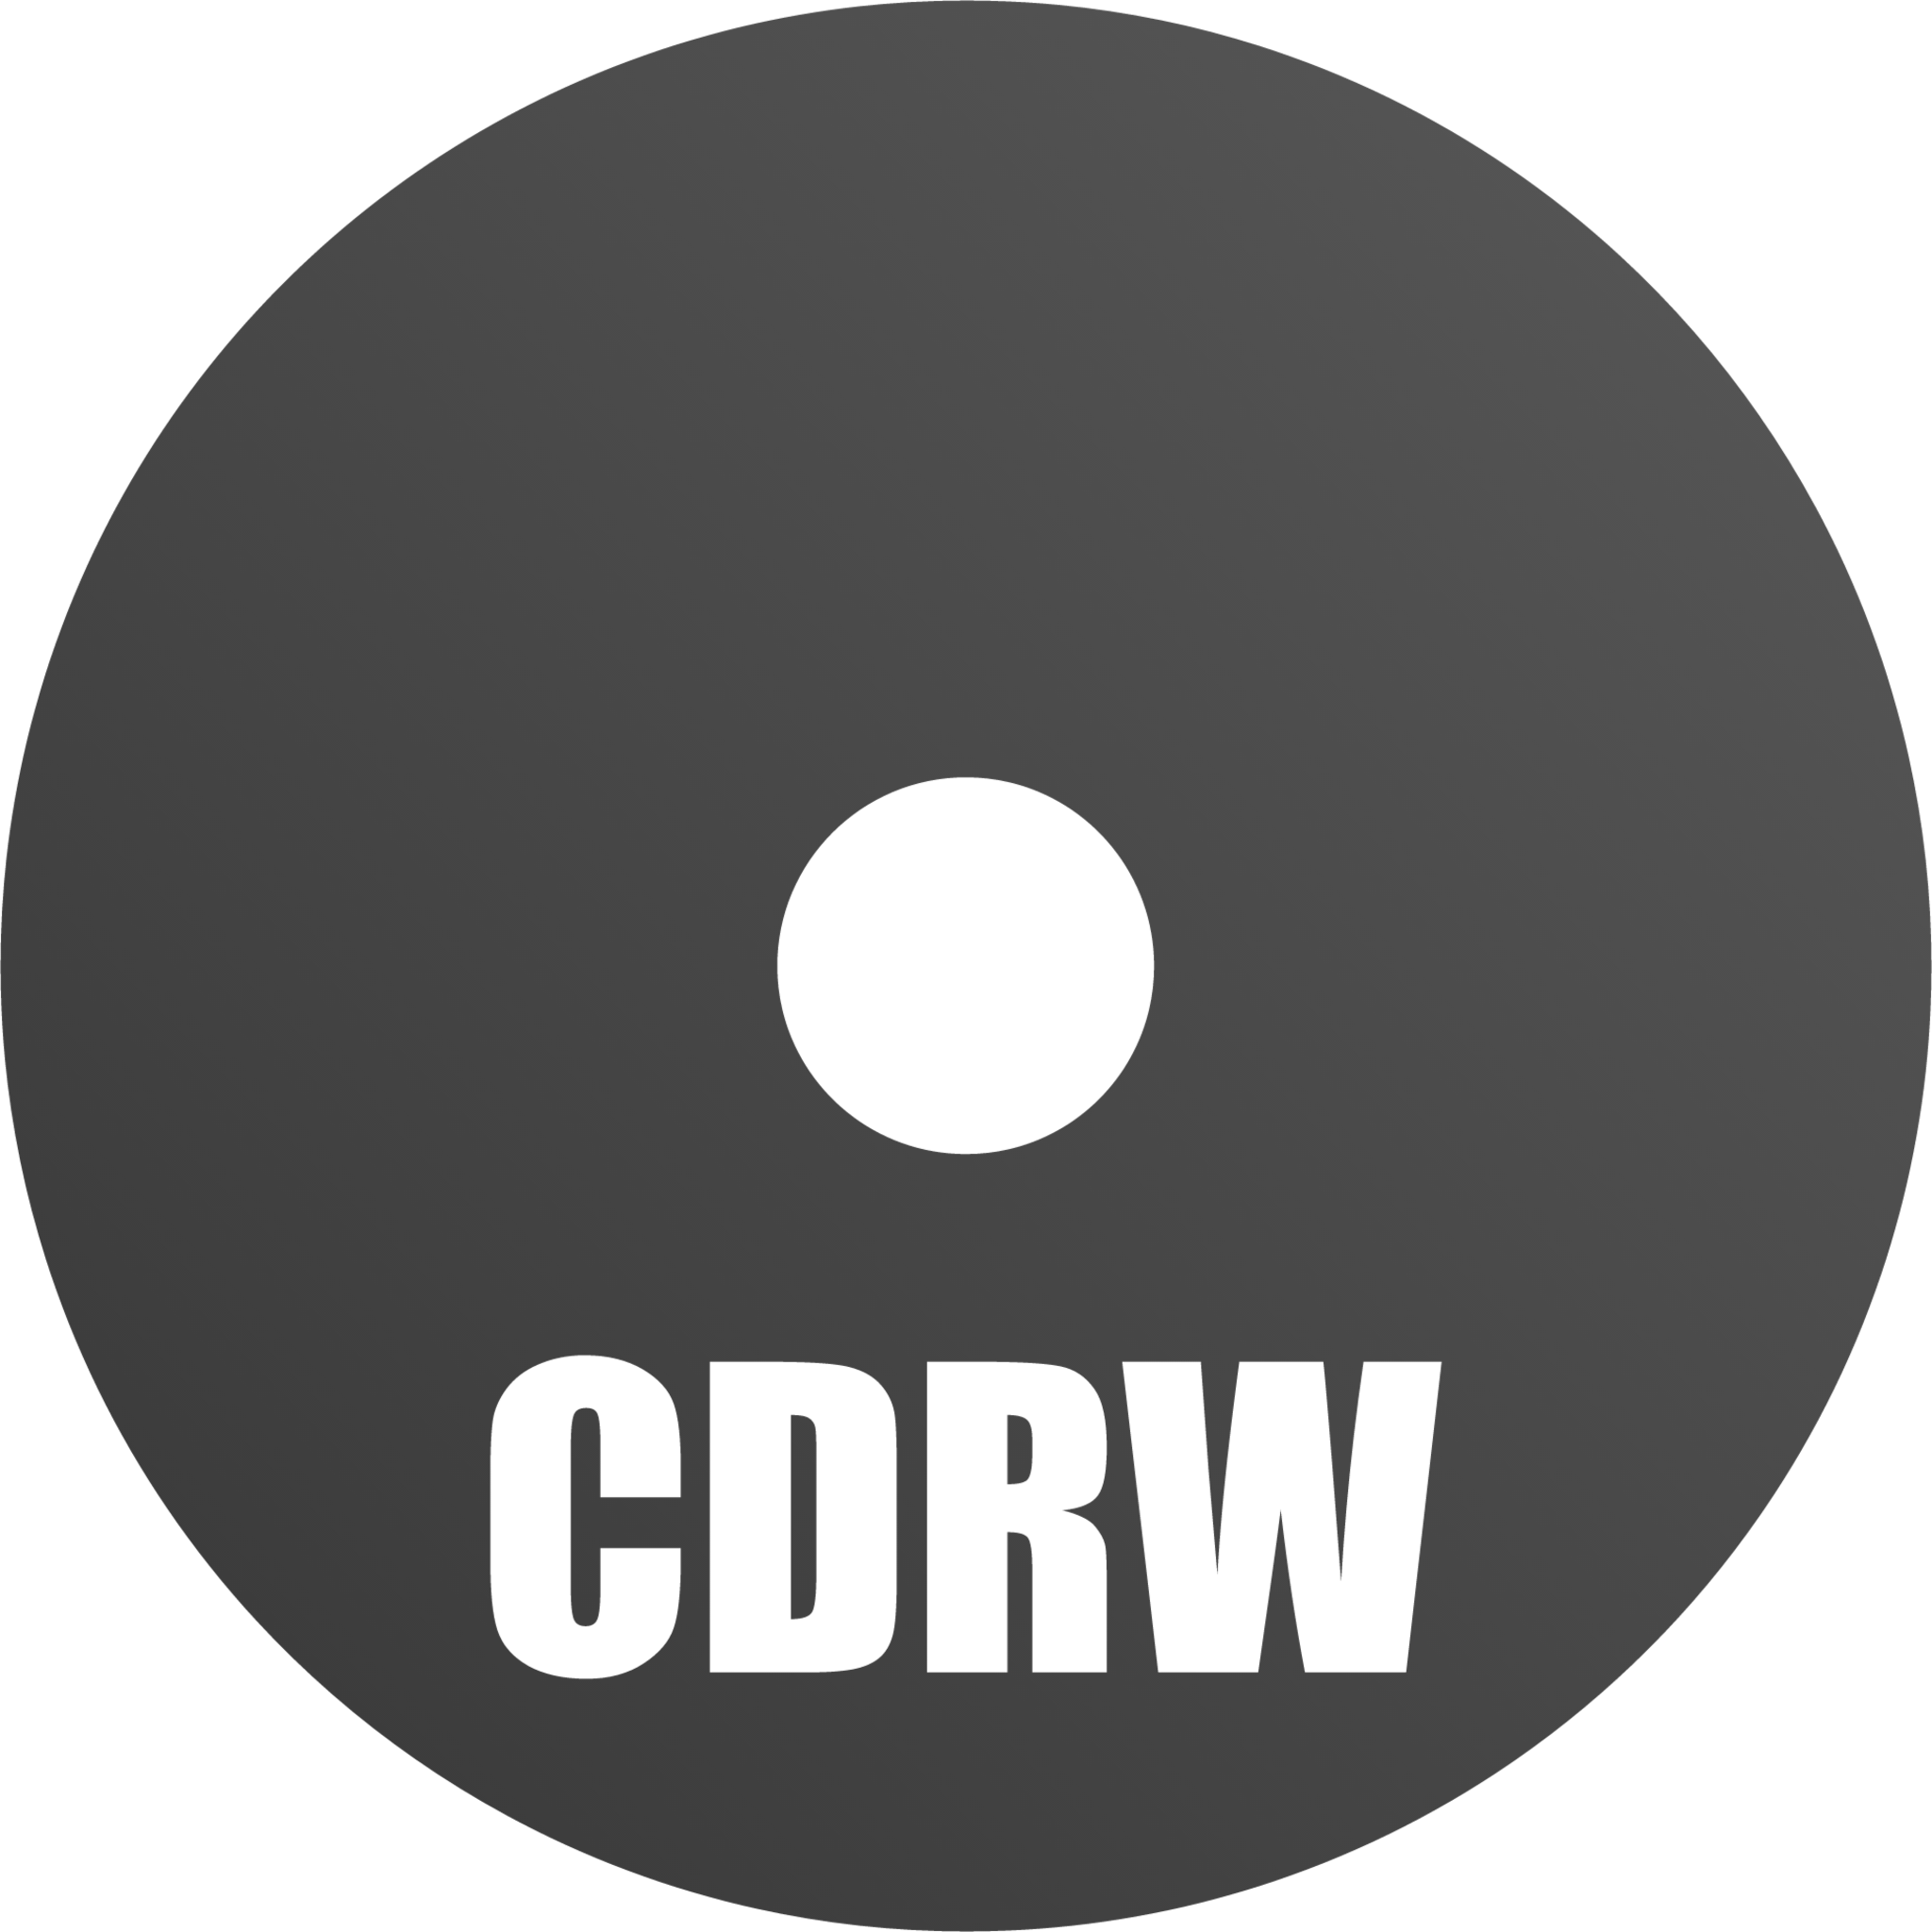 media cdrw icon